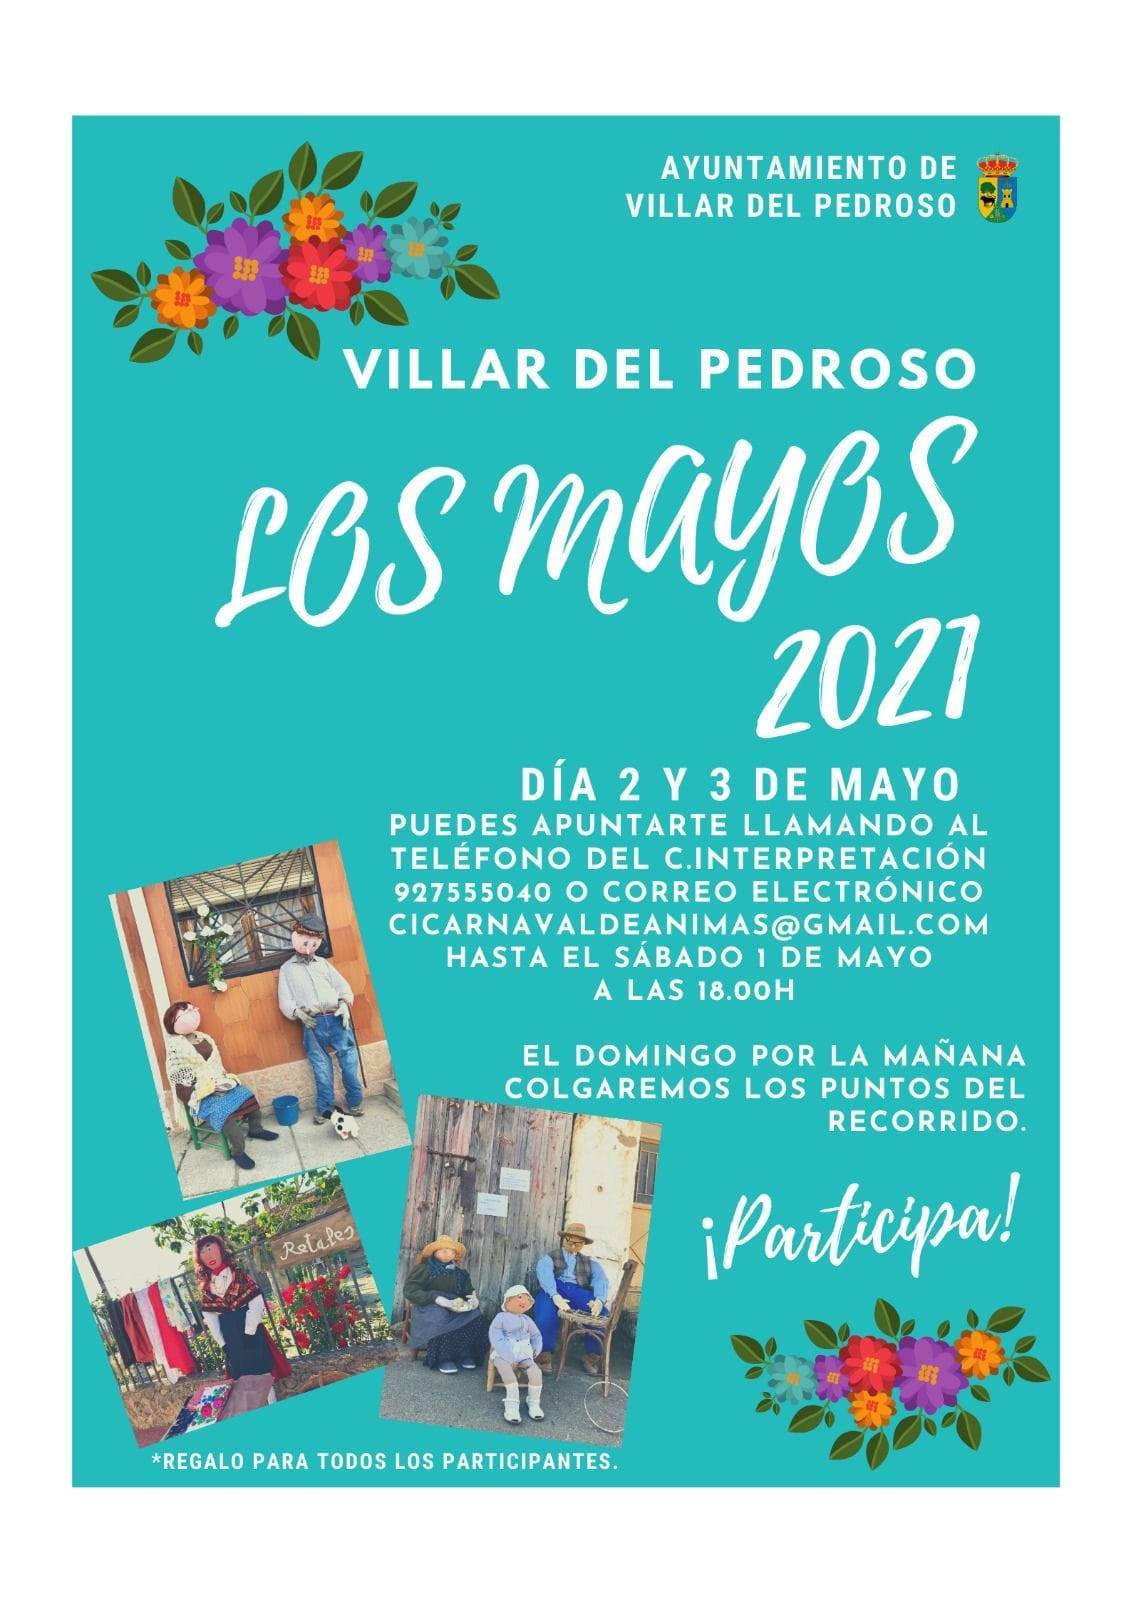 Los Mayos (2021) - Villar del Pedroso (Cáceres)